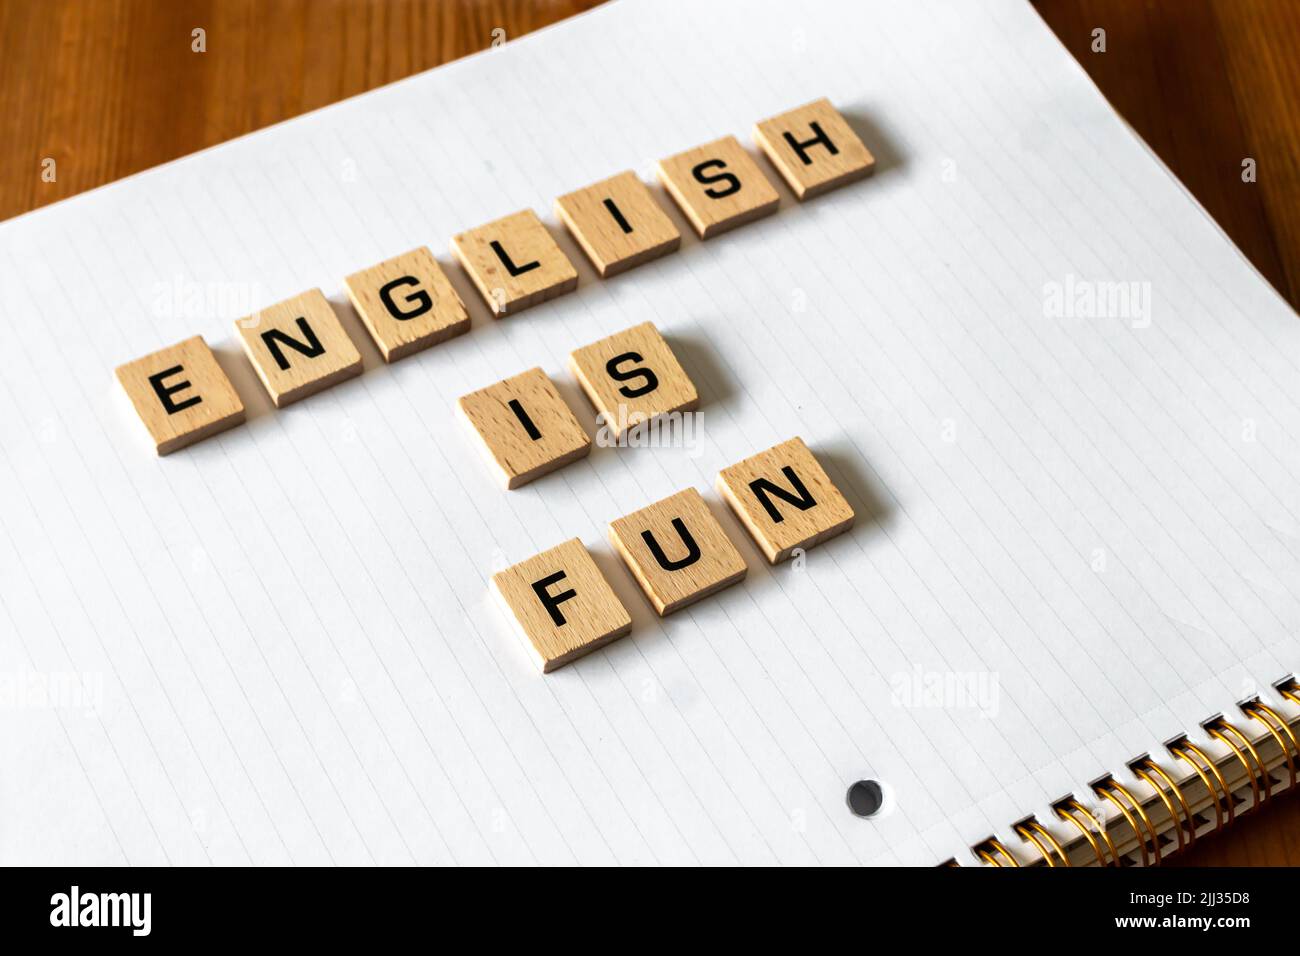 Le lettere di legno spiegano "l'inglese è divertimento" su un blocco note bianco rivestito. Superficie della scrivania in legno duro. Ritorno a scuola, apprendimento di persona, apprendimento online. Foto Stock